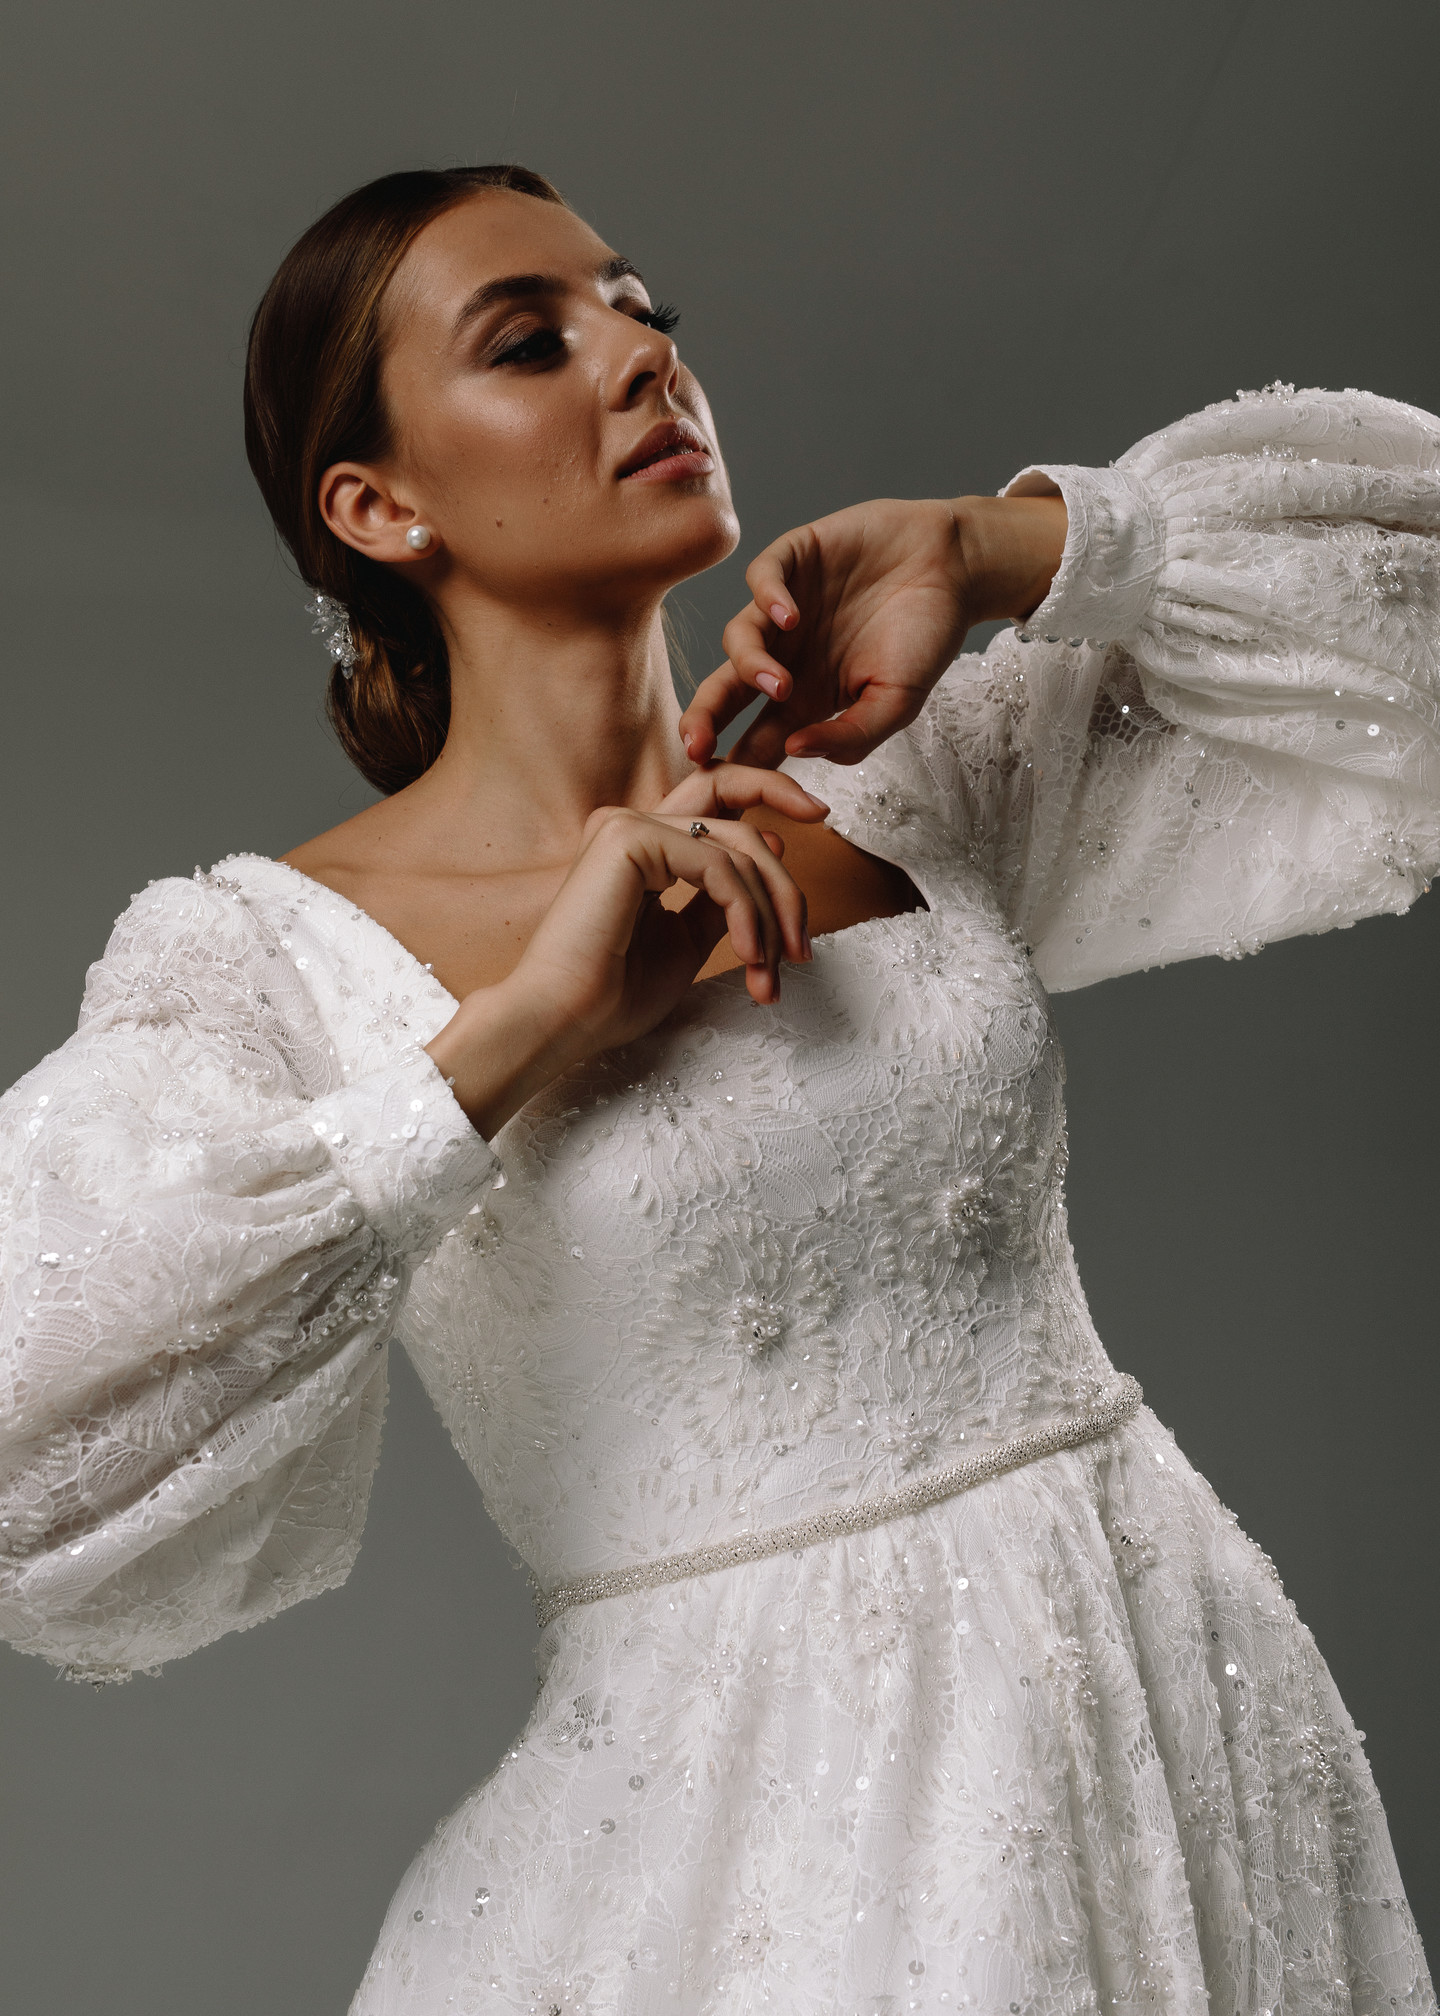 Платье Бьянка, 2020, одежда, платье, свадебное, молочно-белый, кружево, А-силуэт, вышивка, рукава, шлейф